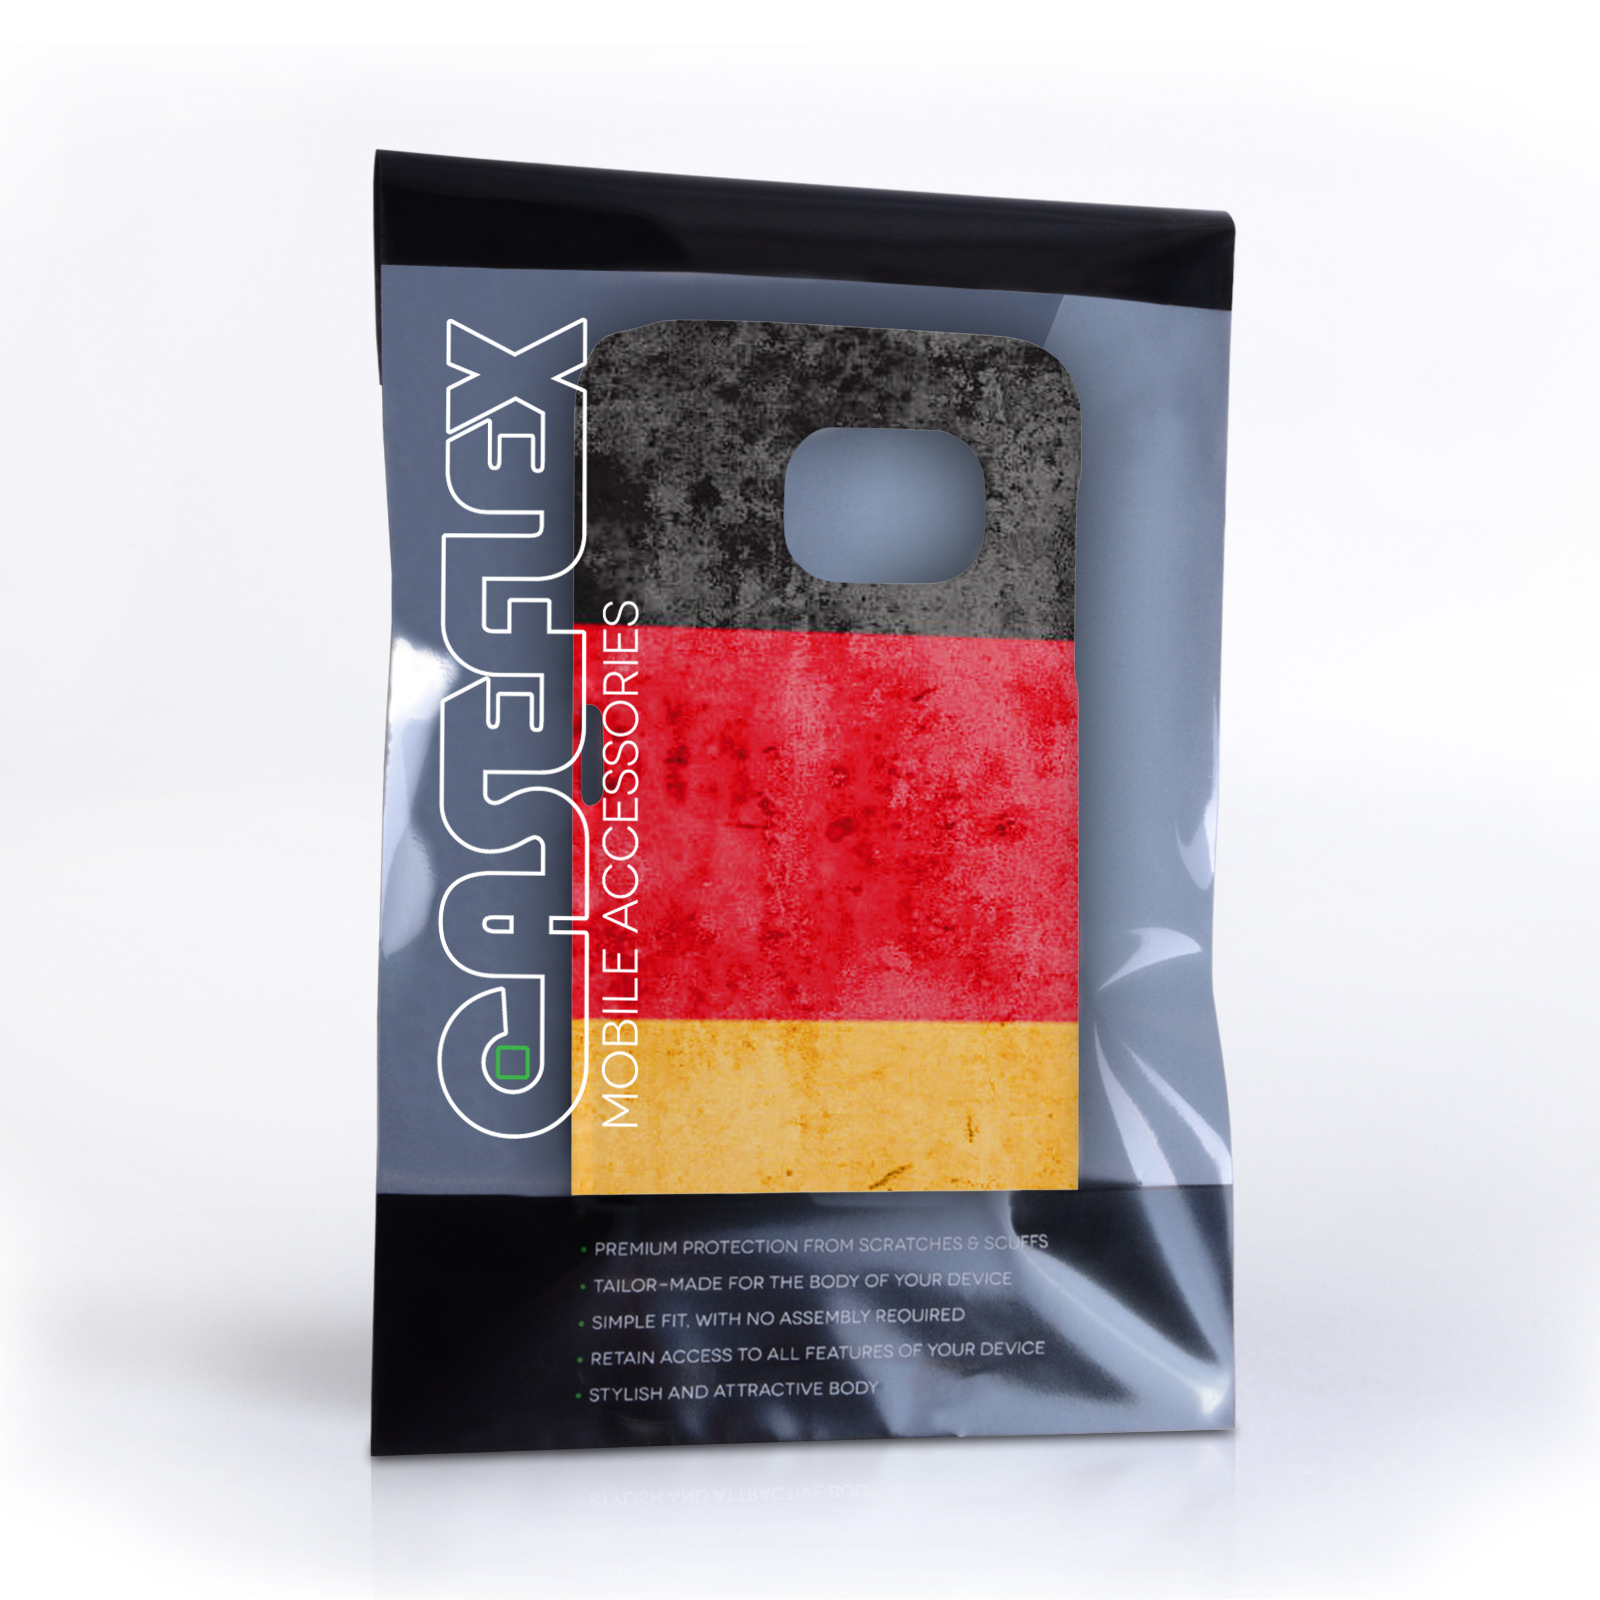 Caseflex Samsung Galaxy S6 Retro Germany Flag Case